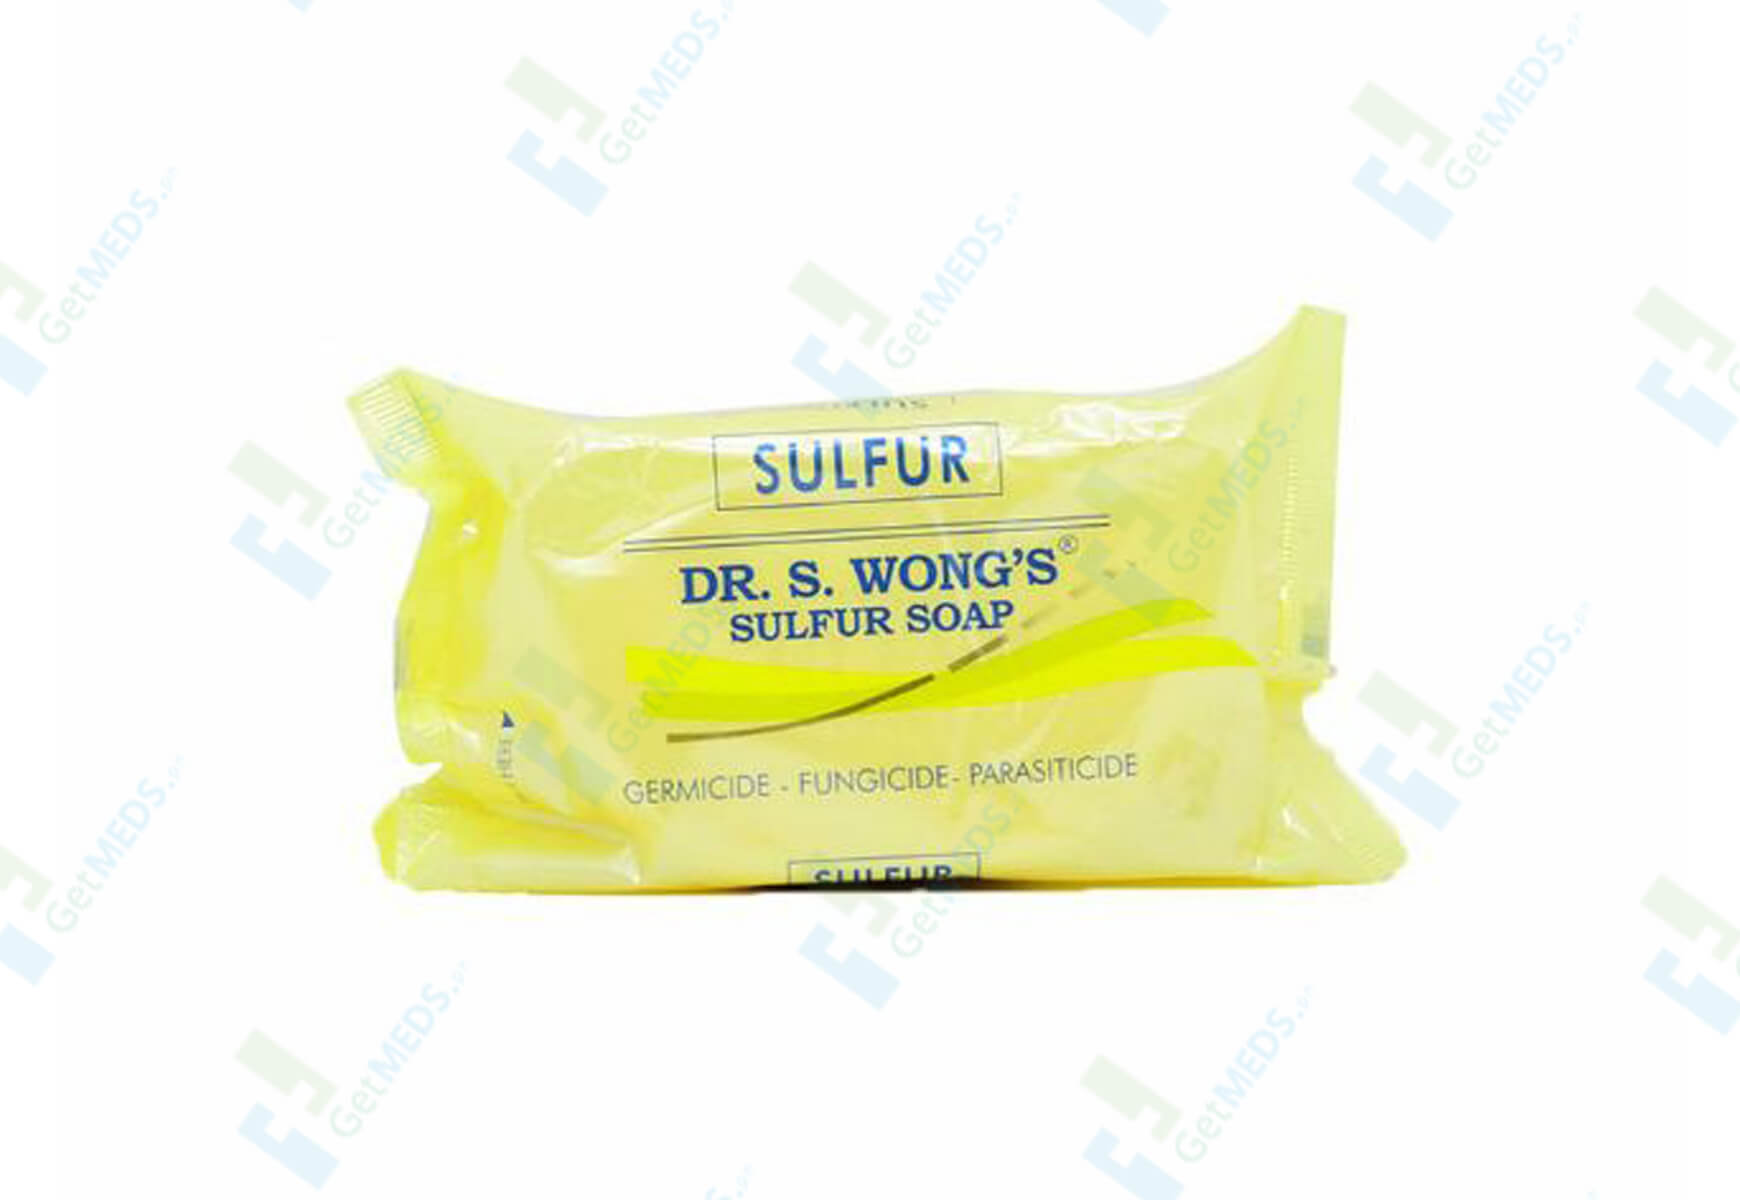 Dr. S. Wong's Sulfur Soap